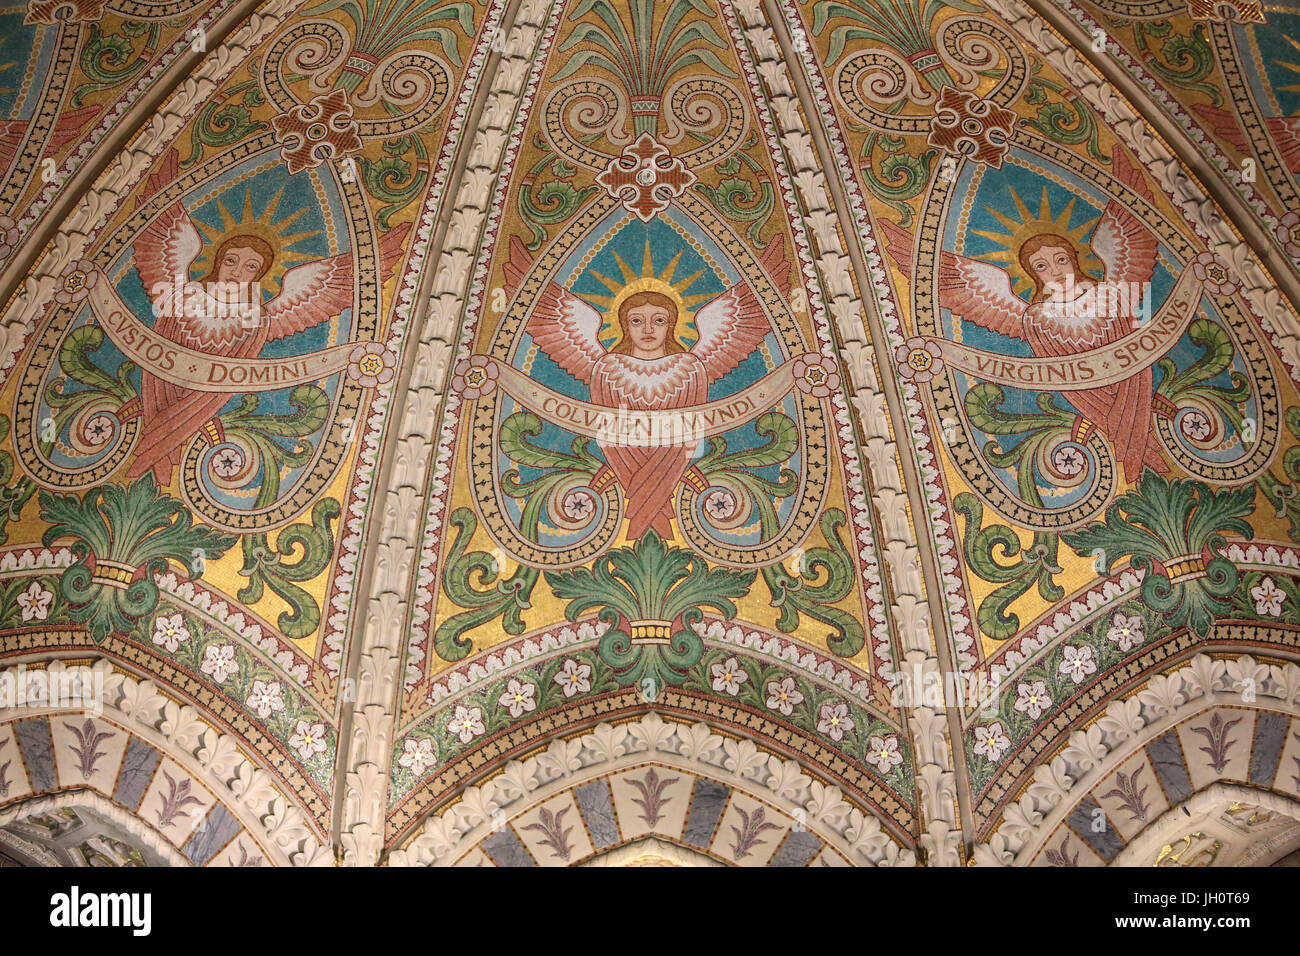 Das Gewölbe des Chores verziert mit Mosaiken, die Seligpreisungen darstellt. Krypta. Kapelle von St. Joseph. Basilika von Notre-Dame de Fourvi re. Lyon. FRA Stockfoto